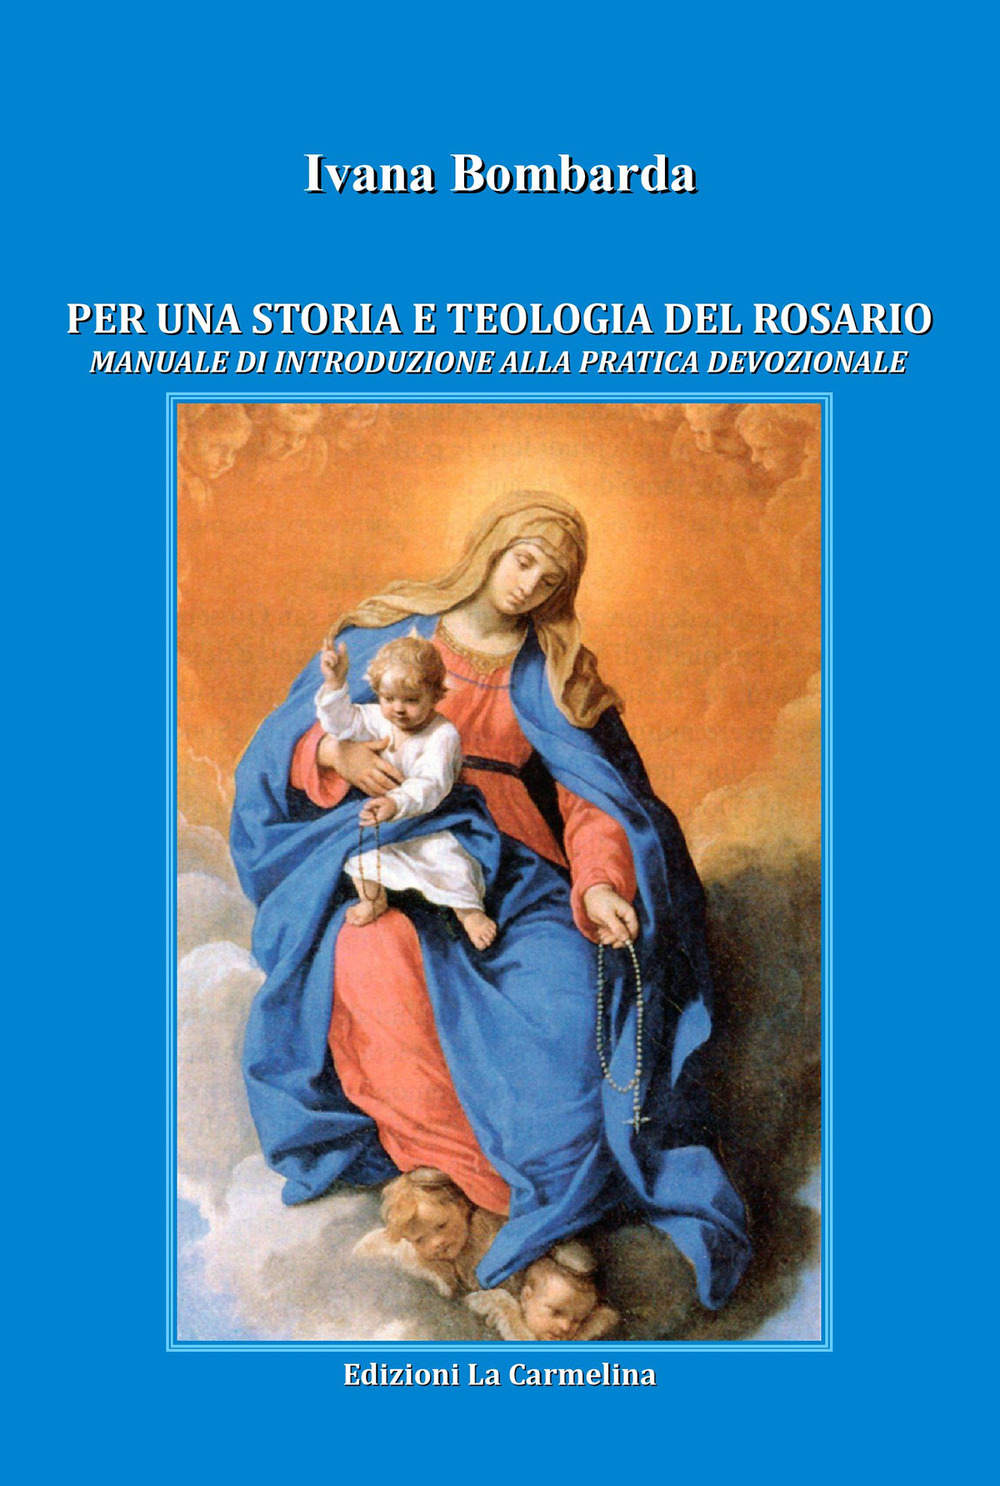 Image of Per una storia e teologia del rosario. Manuale di introduzione alla pratica devozionale